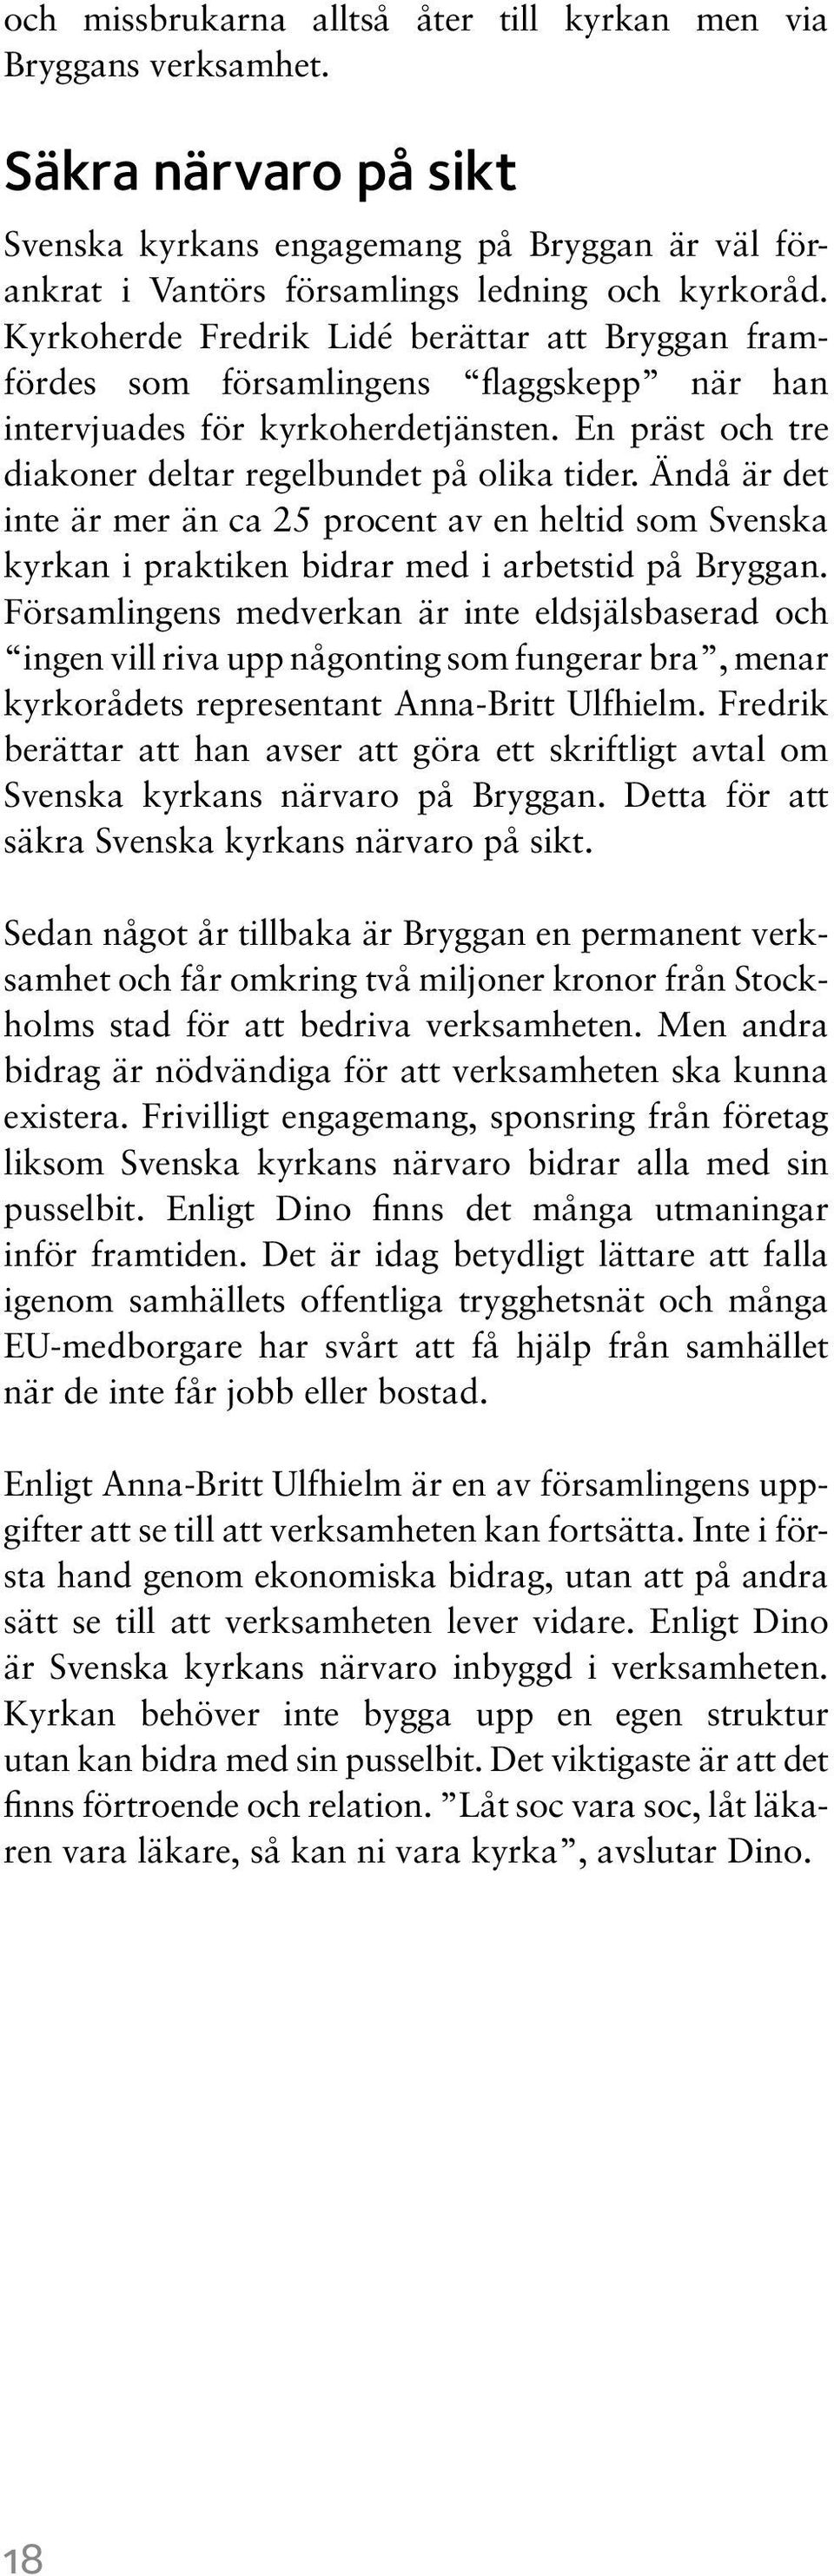 Ändå är det inte är mer än ca 25 procent av en heltid som Svenska kyrkan i praktiken bidrar med i arbetstid på Bryggan.